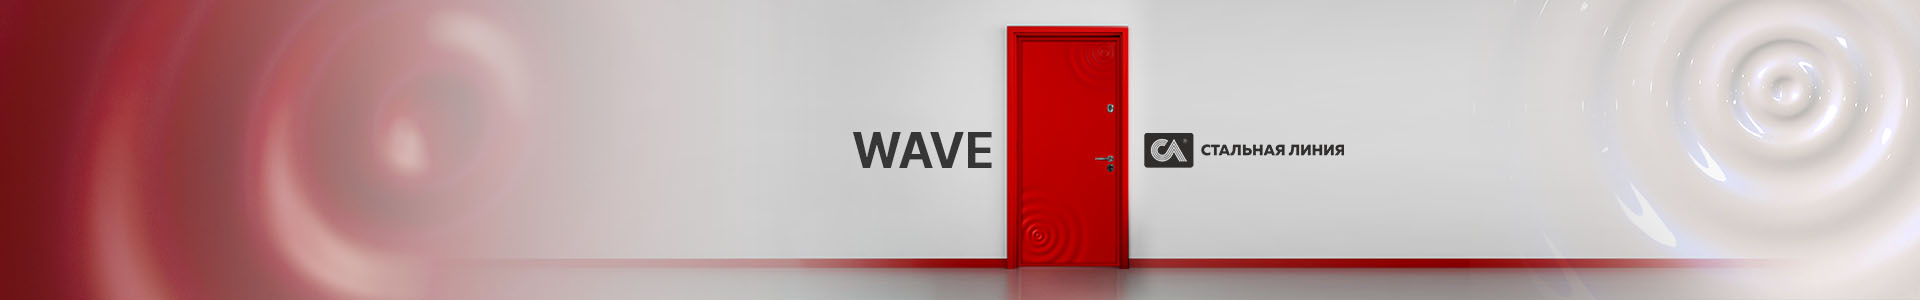 Новая коллекция дверей Wave